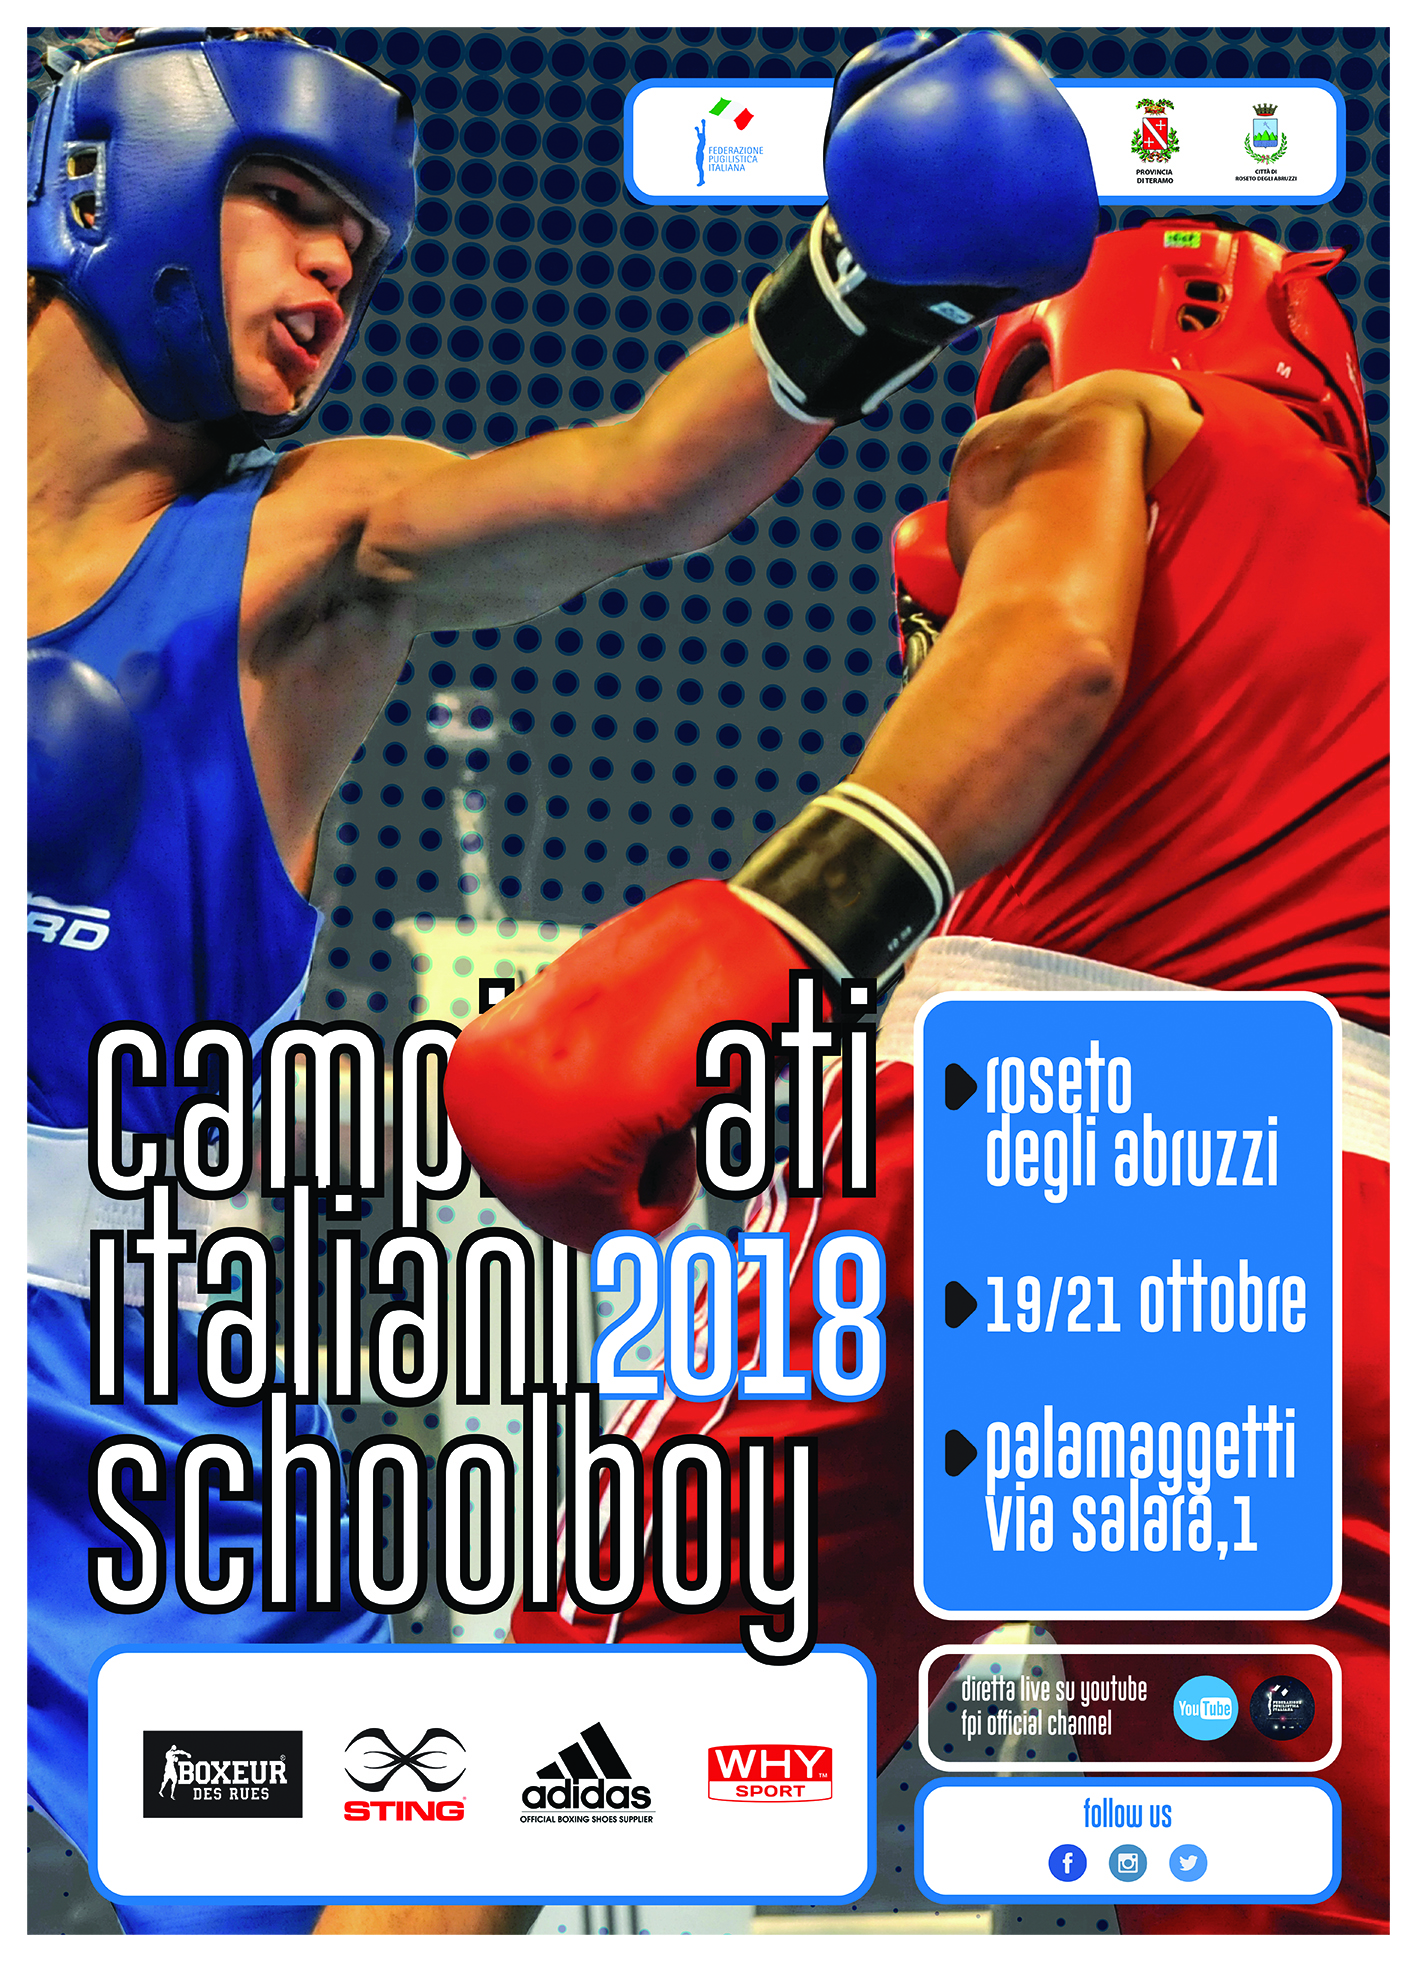 Campionati Italiani Schoolboy 2018 Roseto degli Abruzzi 19-21 Ottobre: 119 i Boxer in Gara #SchoolBoy18